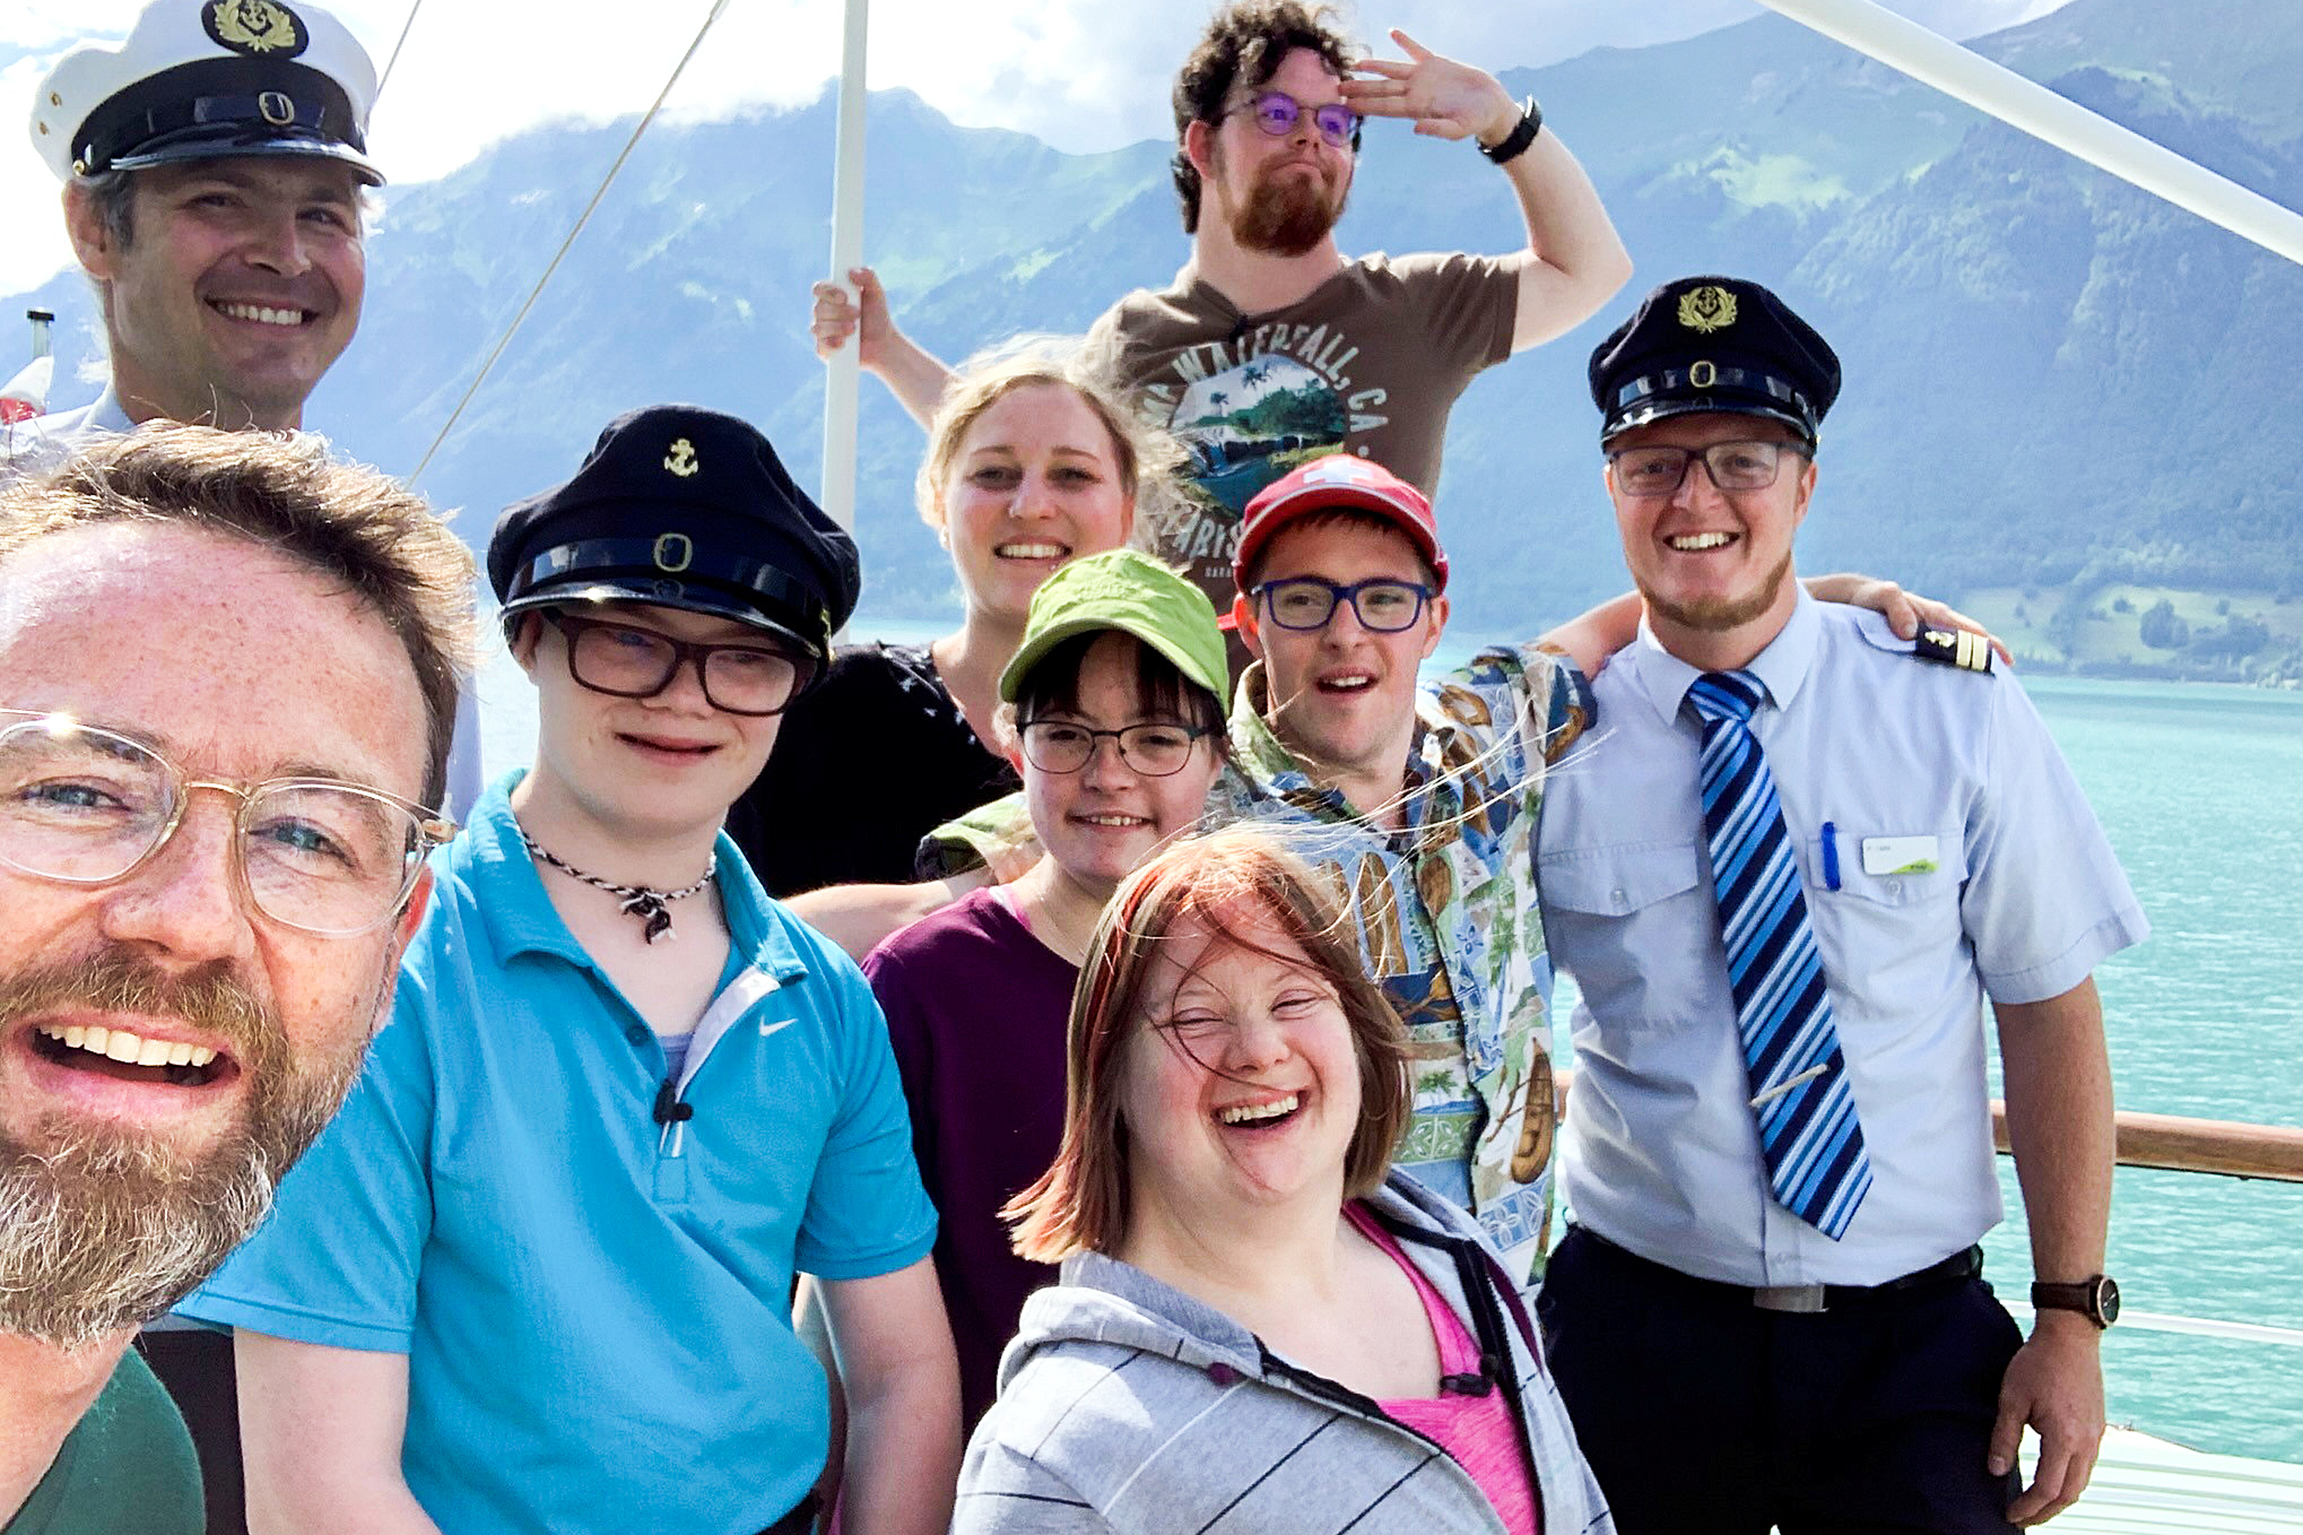 SRF bi de Lüt - Reise mitohne Hindernis 2019 Moderator Nik Hartmann unterwegs mit sechs jungen Menschen mit Down Syndrom:  Schiffahrt auf dem Brienzersee, auf dem Dampfschiff Lötschberg